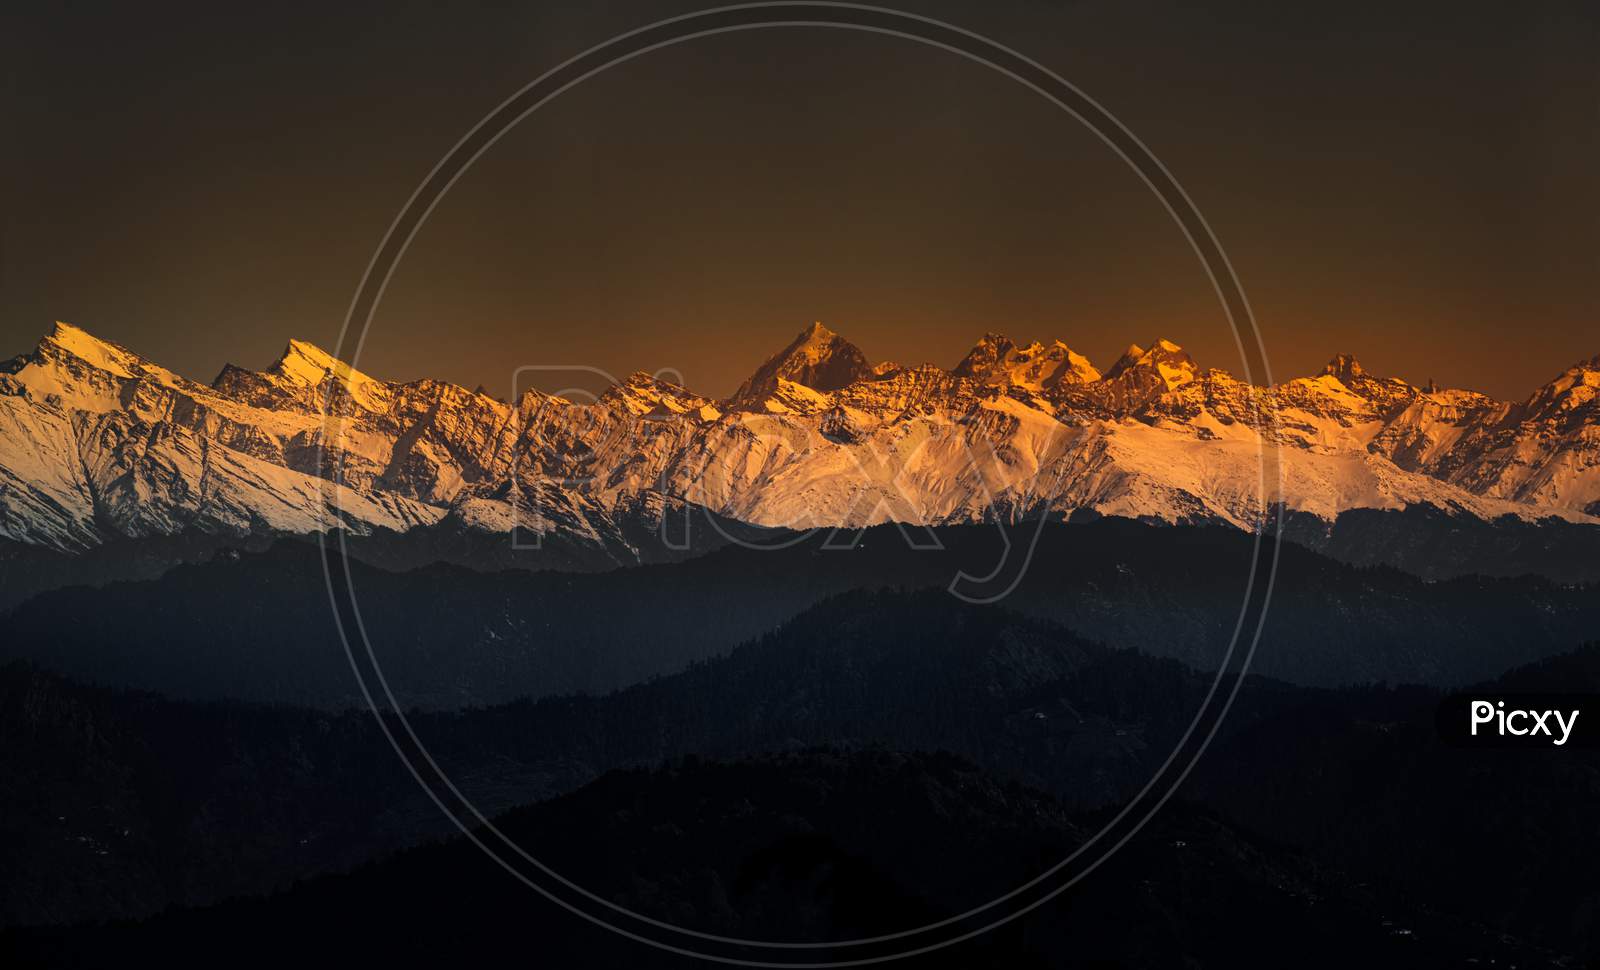 Himalayas mountains, sunlight, 2019